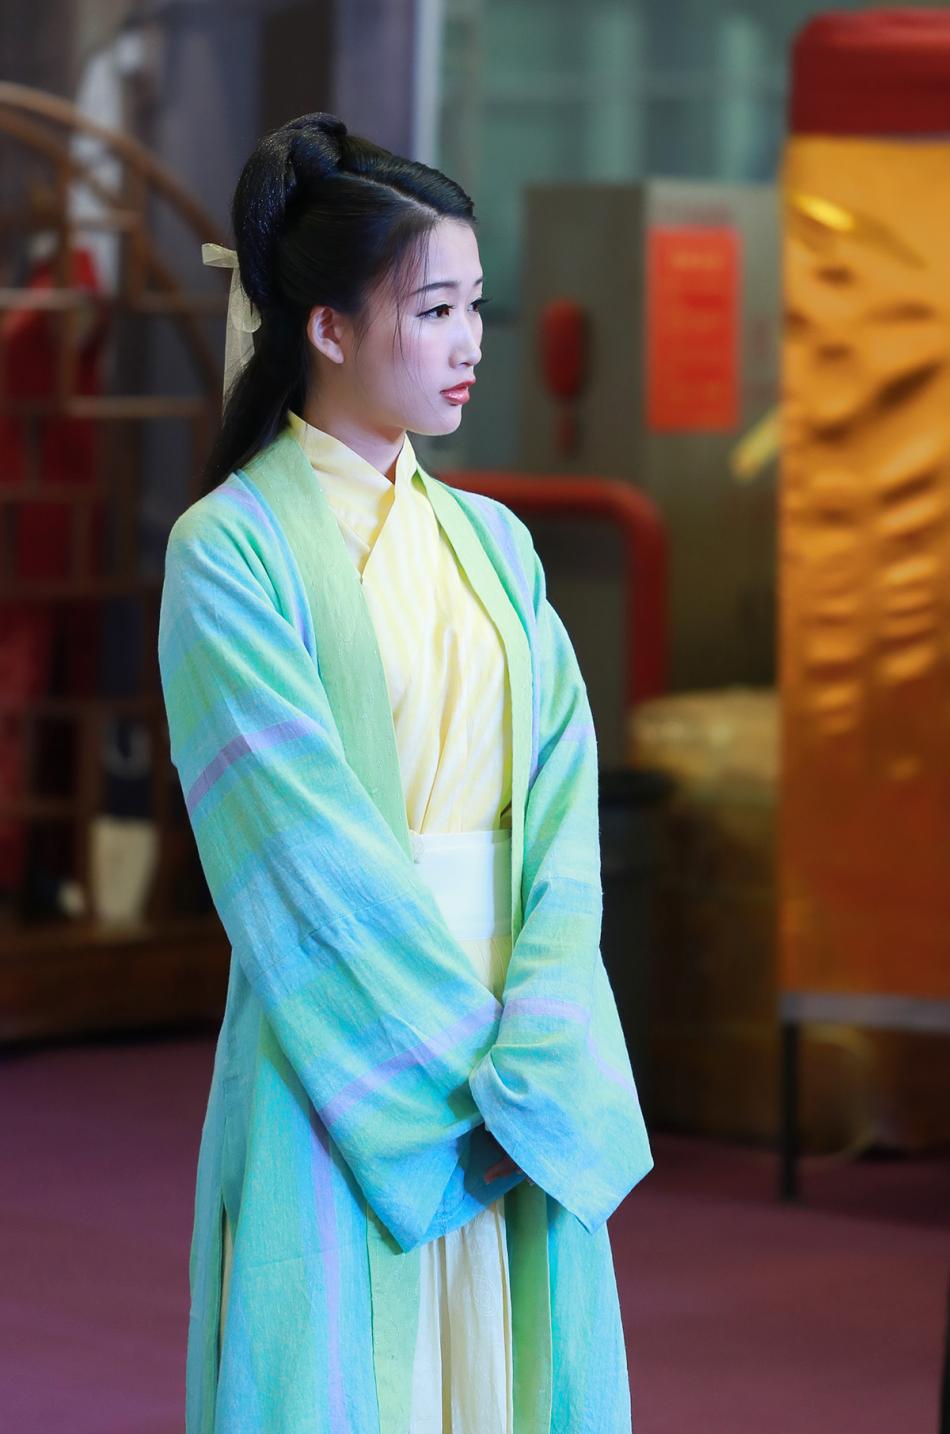 鞠躬礼源于中国是茶艺活动中的礼节